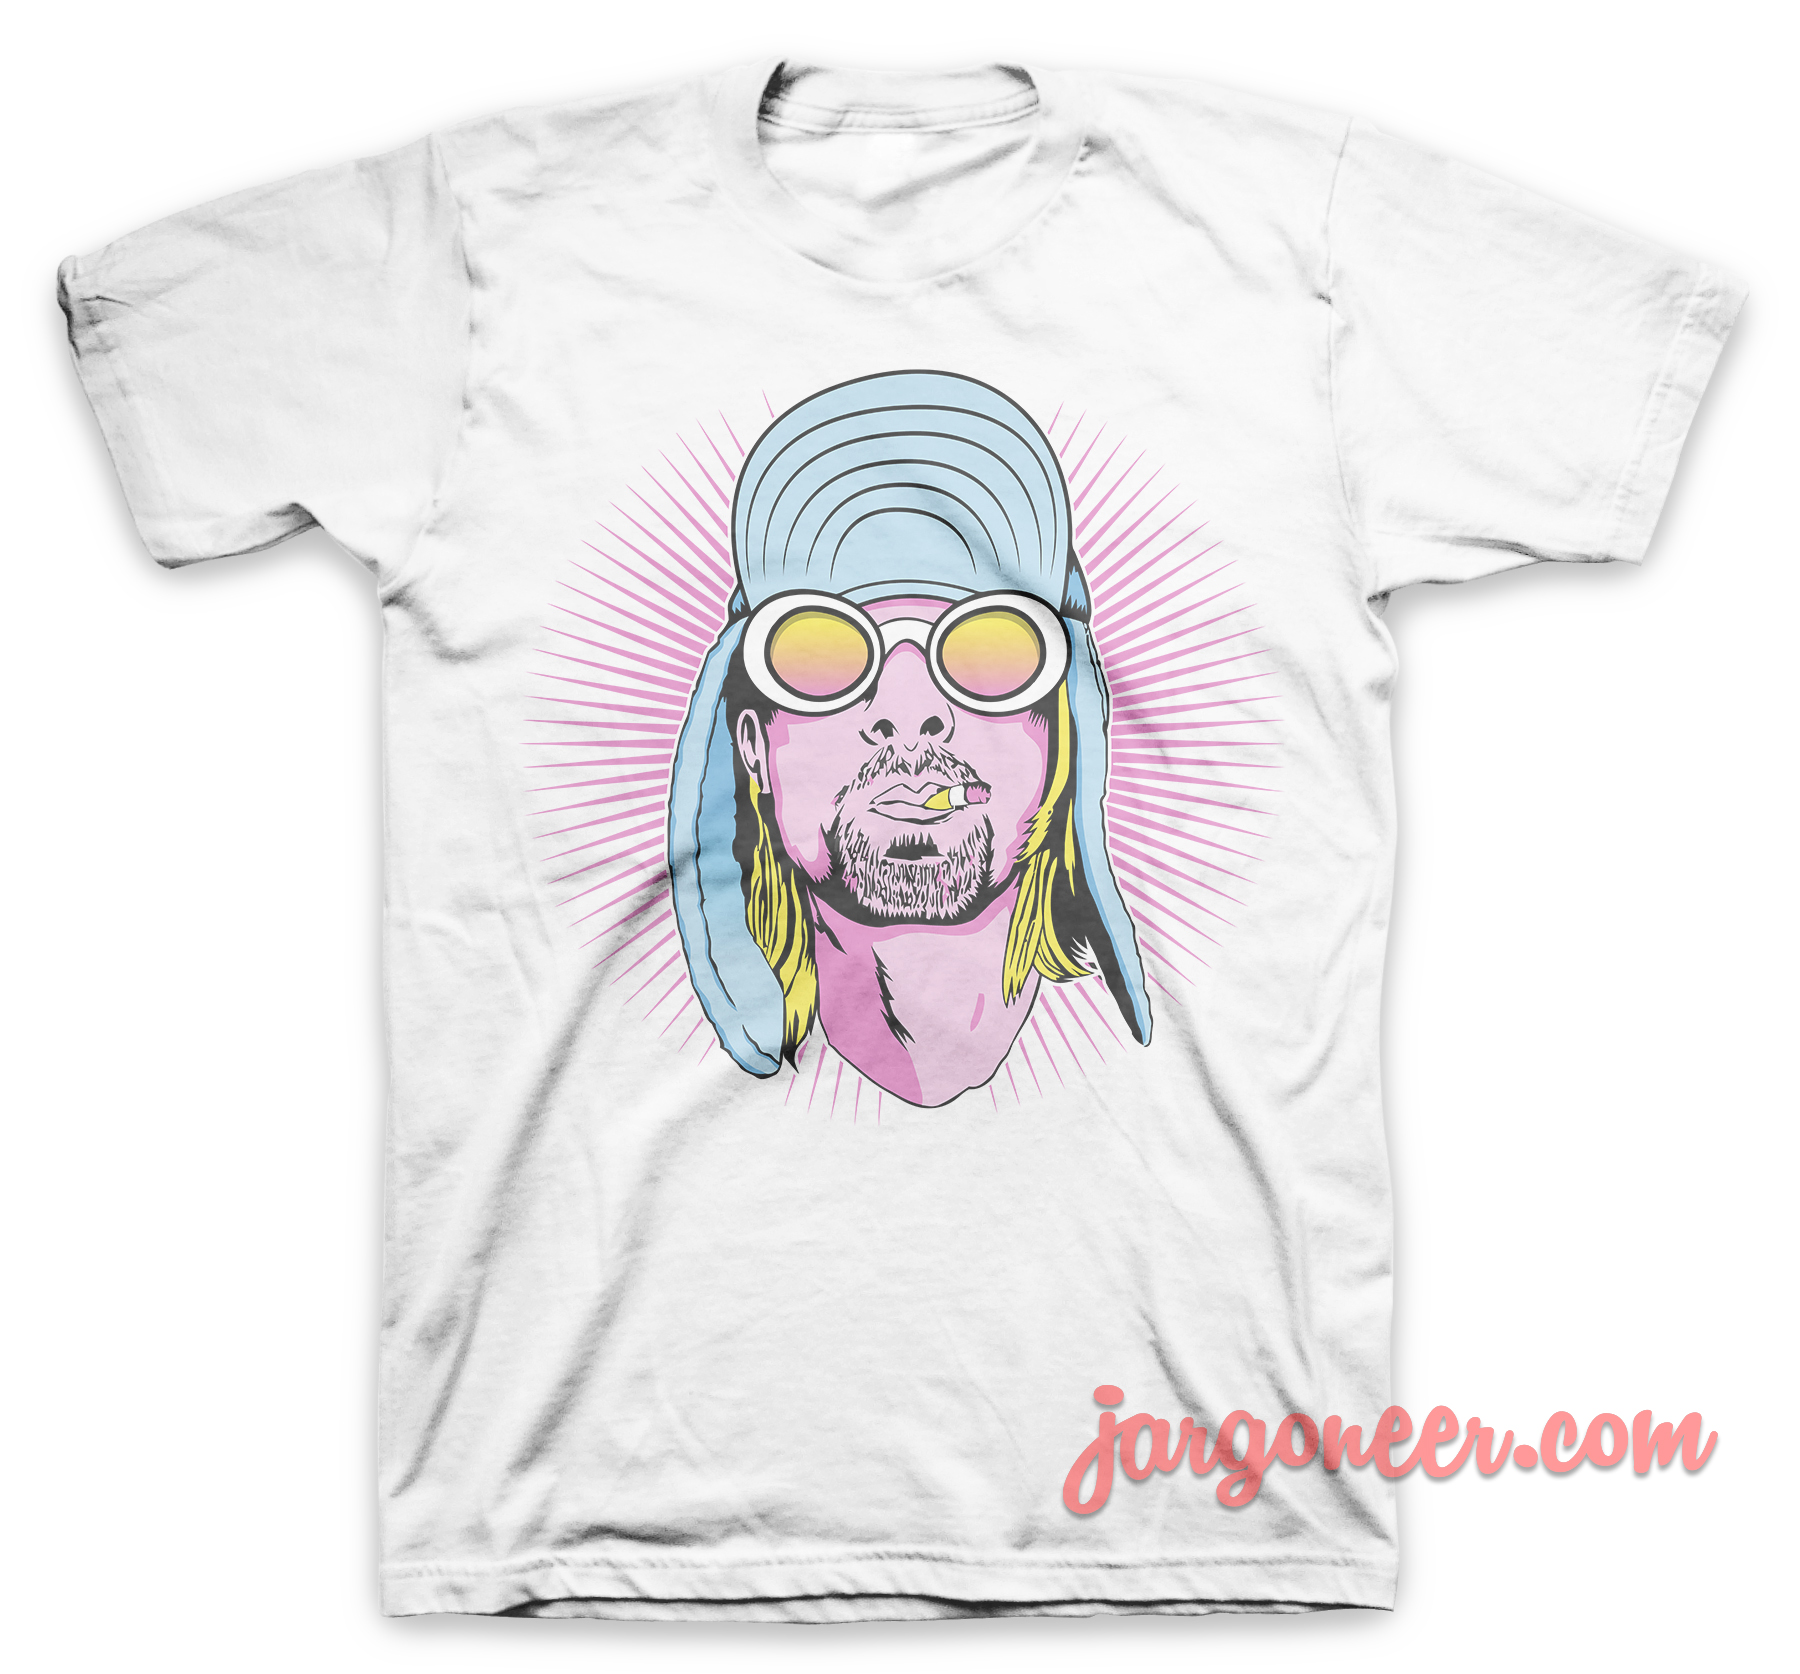 Neon Grunge White T Shirt - Shop Unique Graphic Cool Shirt Designs